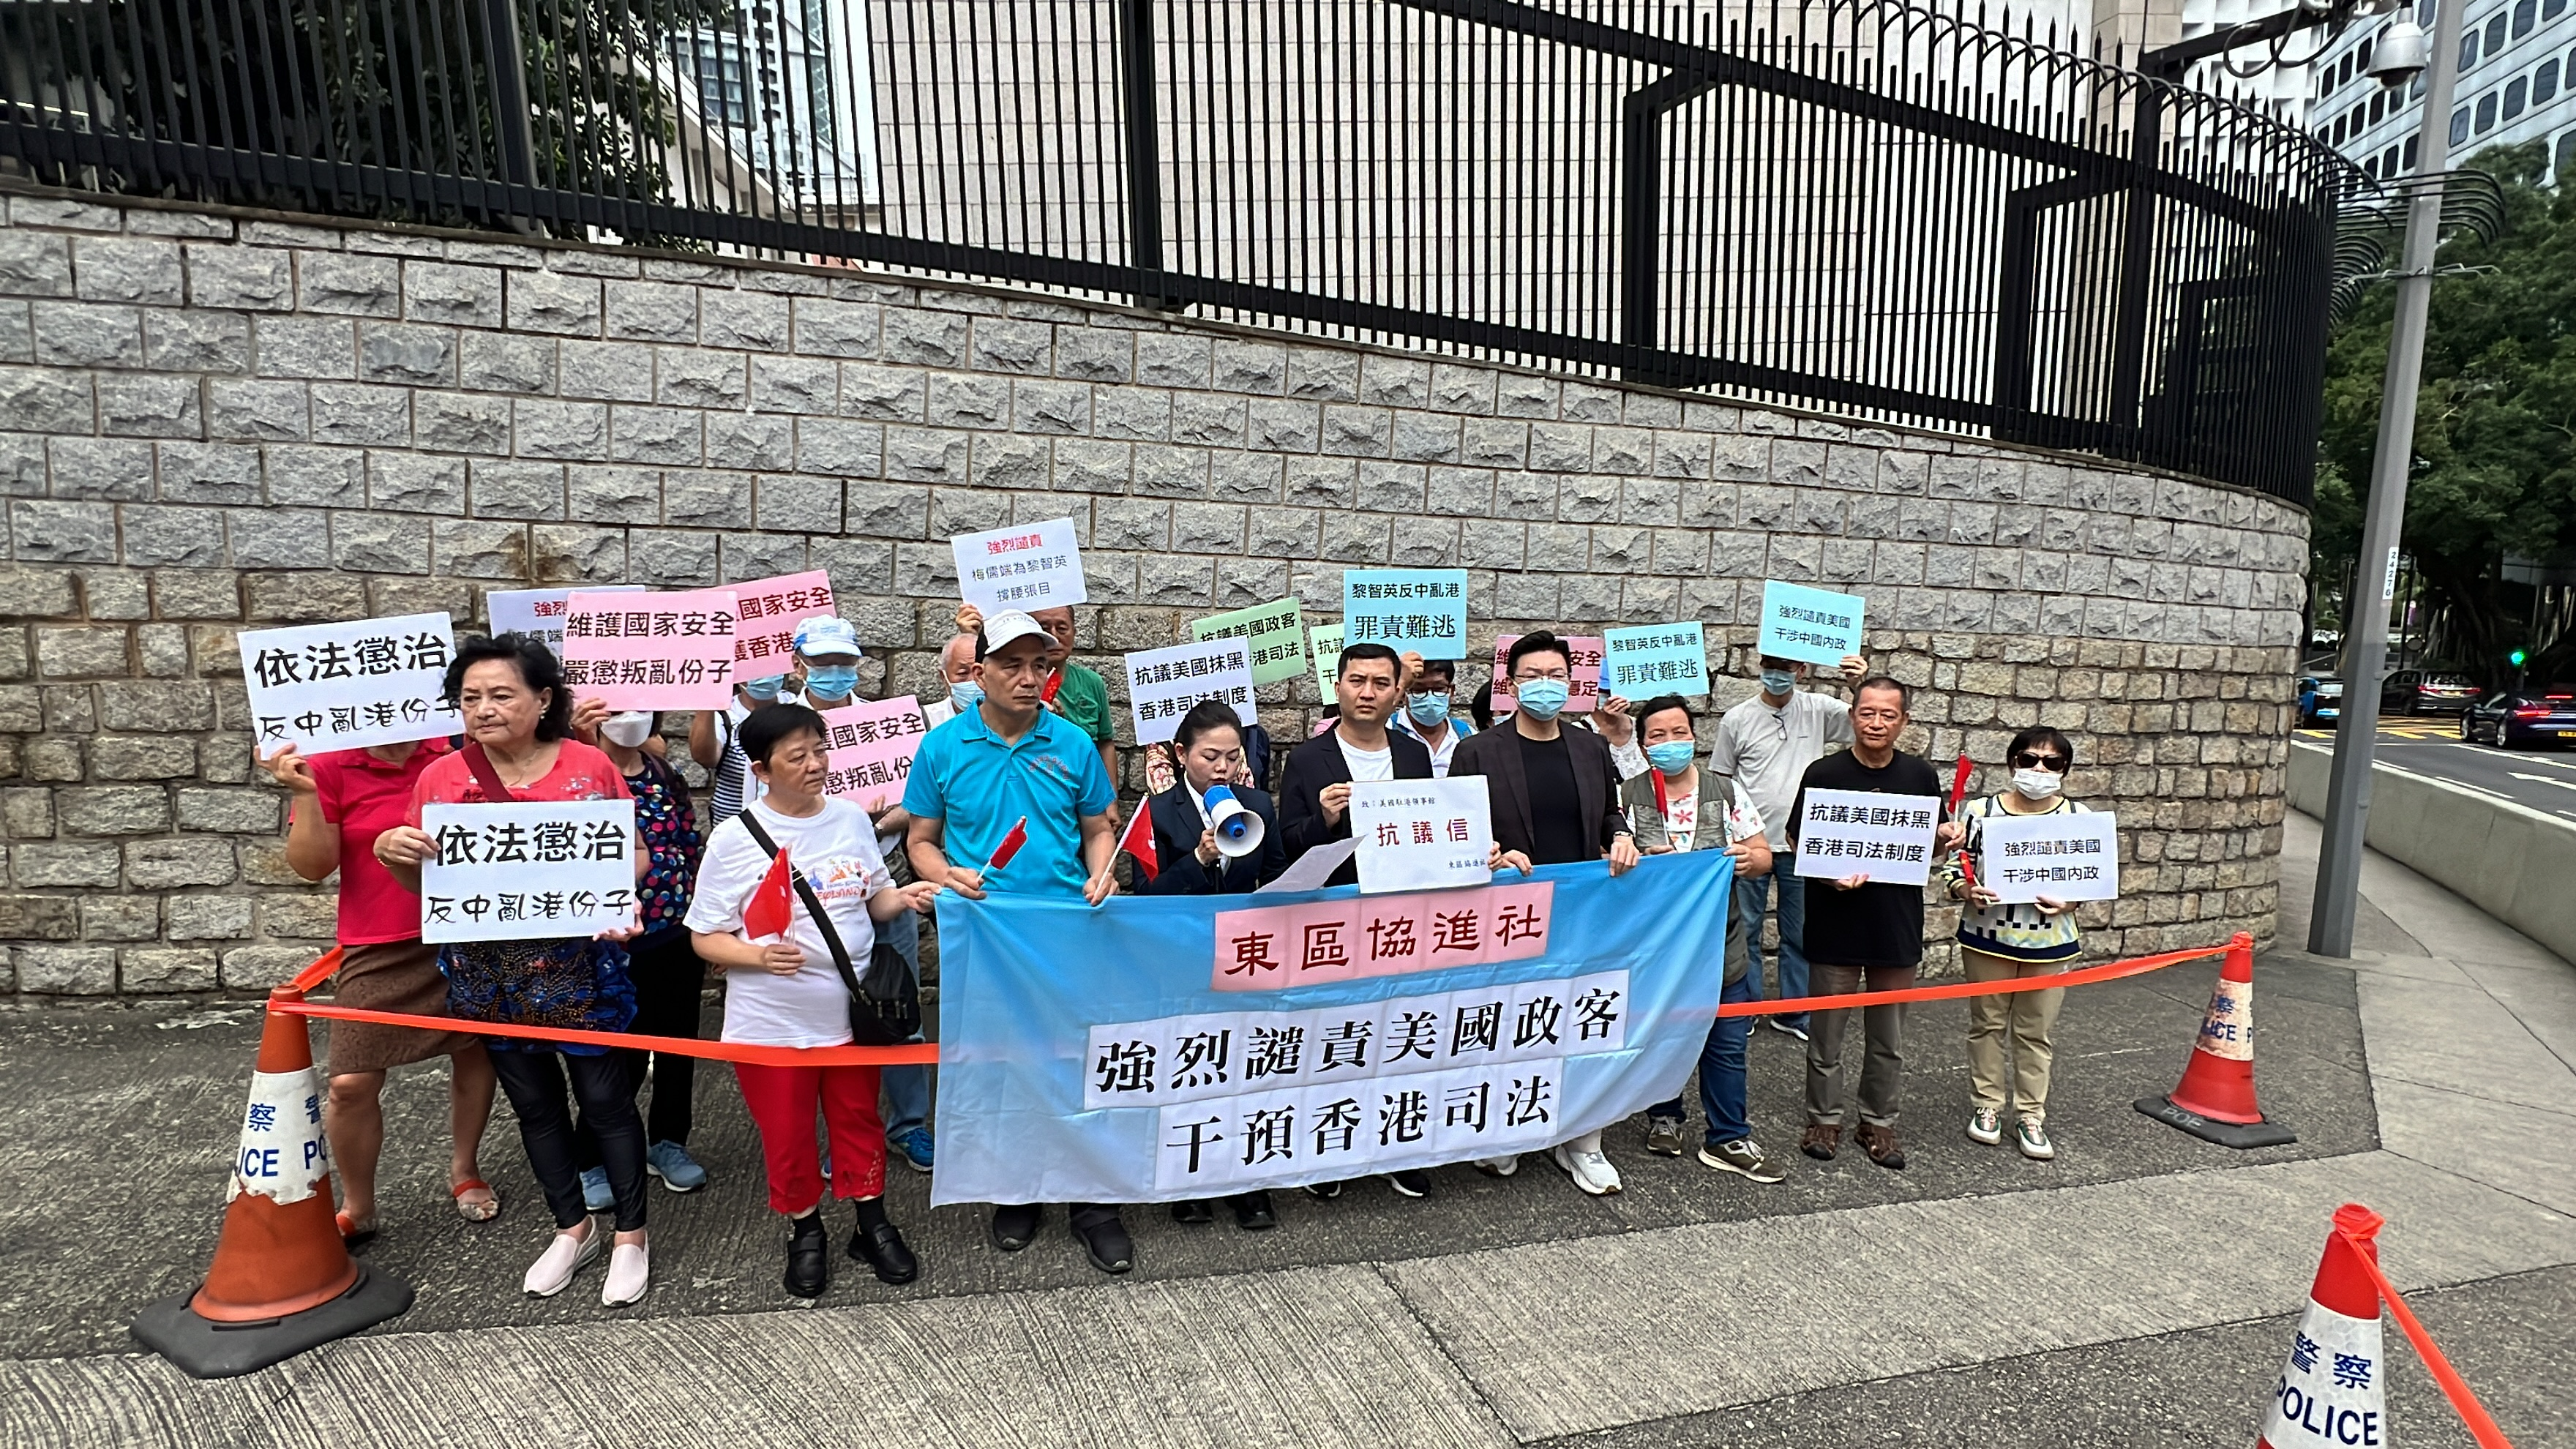 港島聯旗下團體到美領館抗議 強烈責譴責美國政客干預香港司法